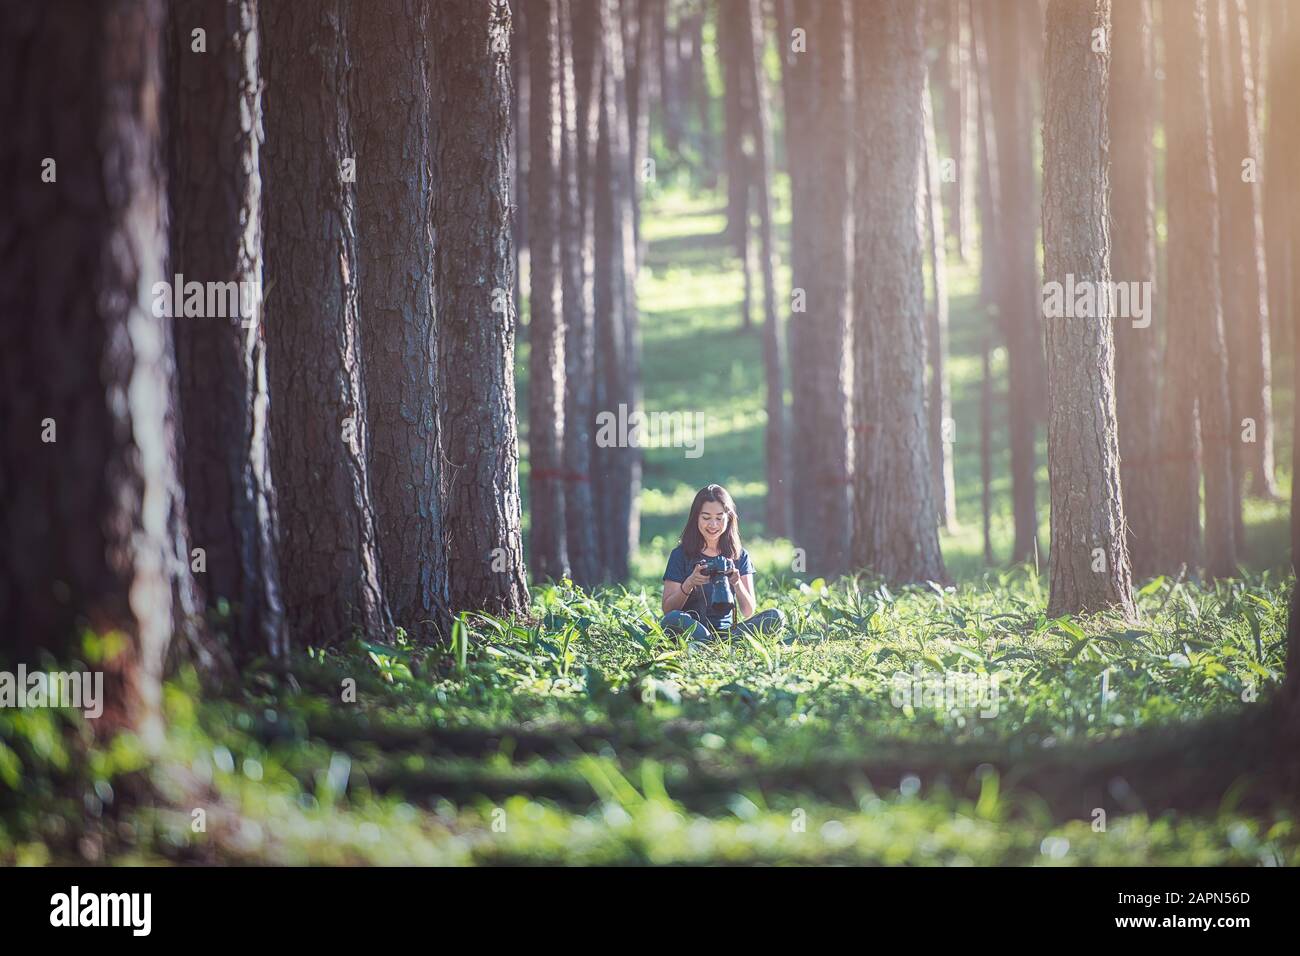 Ein Fotograf, der sich an den Baum lehnt und dabei den Moment genießt, in dem sie mit ihrer Kamera, dem hoch gelegenen Kiefernwald, Thailand, aufgenommen wurde. Stockfoto